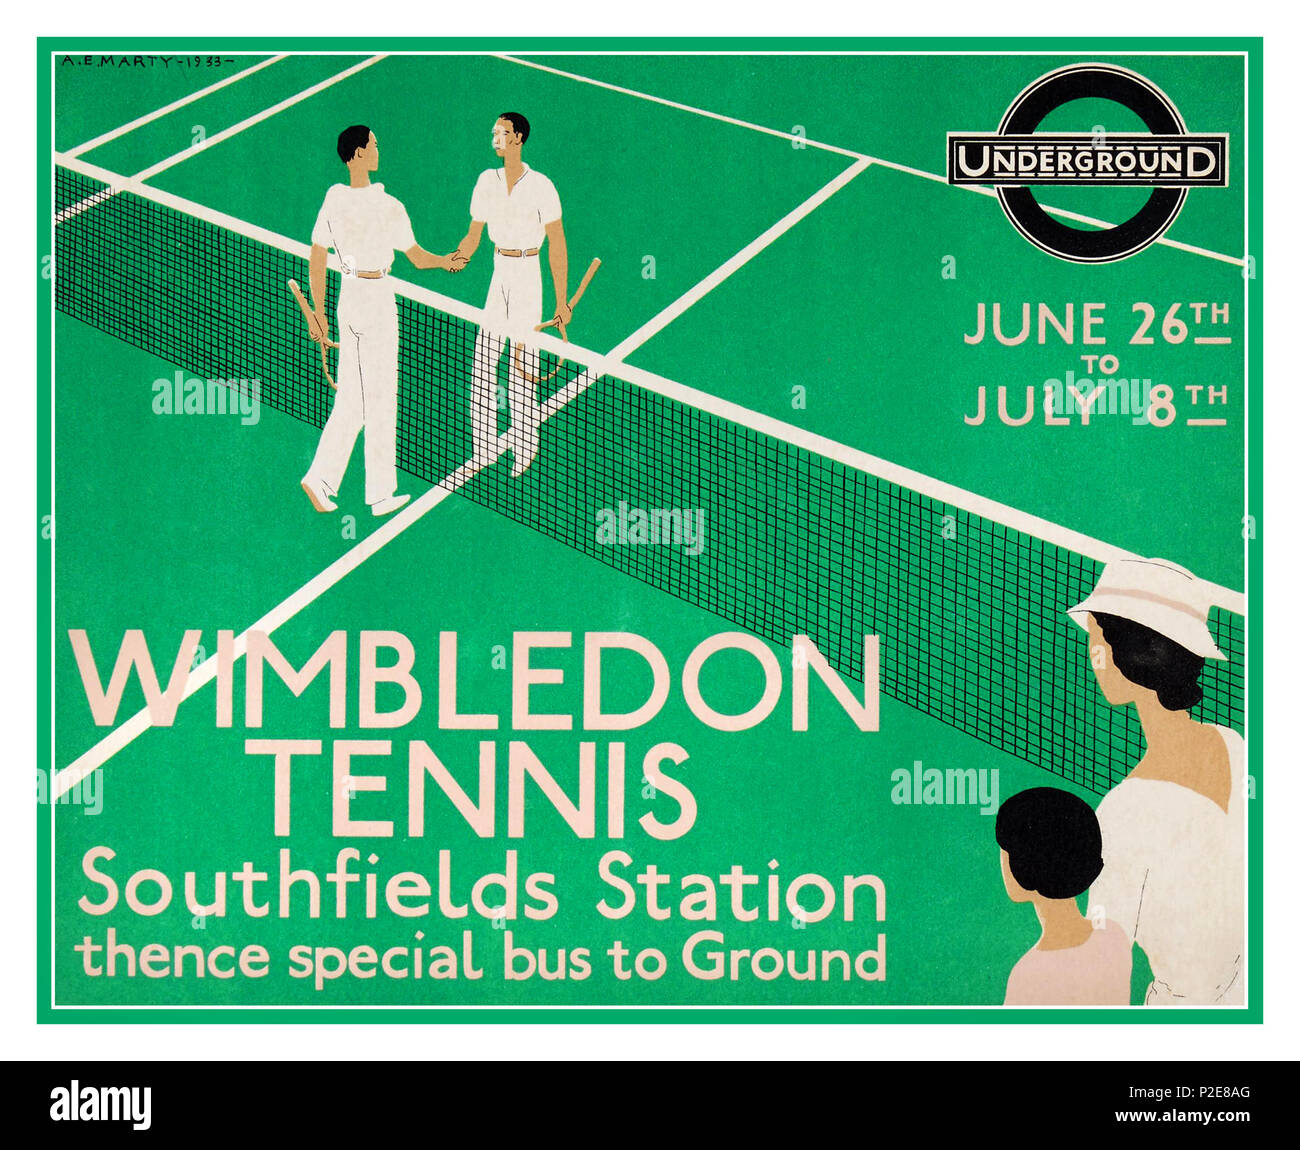 Jahrgang 1933 Wimbledon Tennis Plakat werbung Lithographie im Art déco-Stil. Künstler Andre Edouard Marty erstellt dieses Plakat für Wimbledon entspricht dem 26. Juni - 8. Juli 1933 mit Zugang von der Londoner U-Bahn über die southfields Station Stockfoto